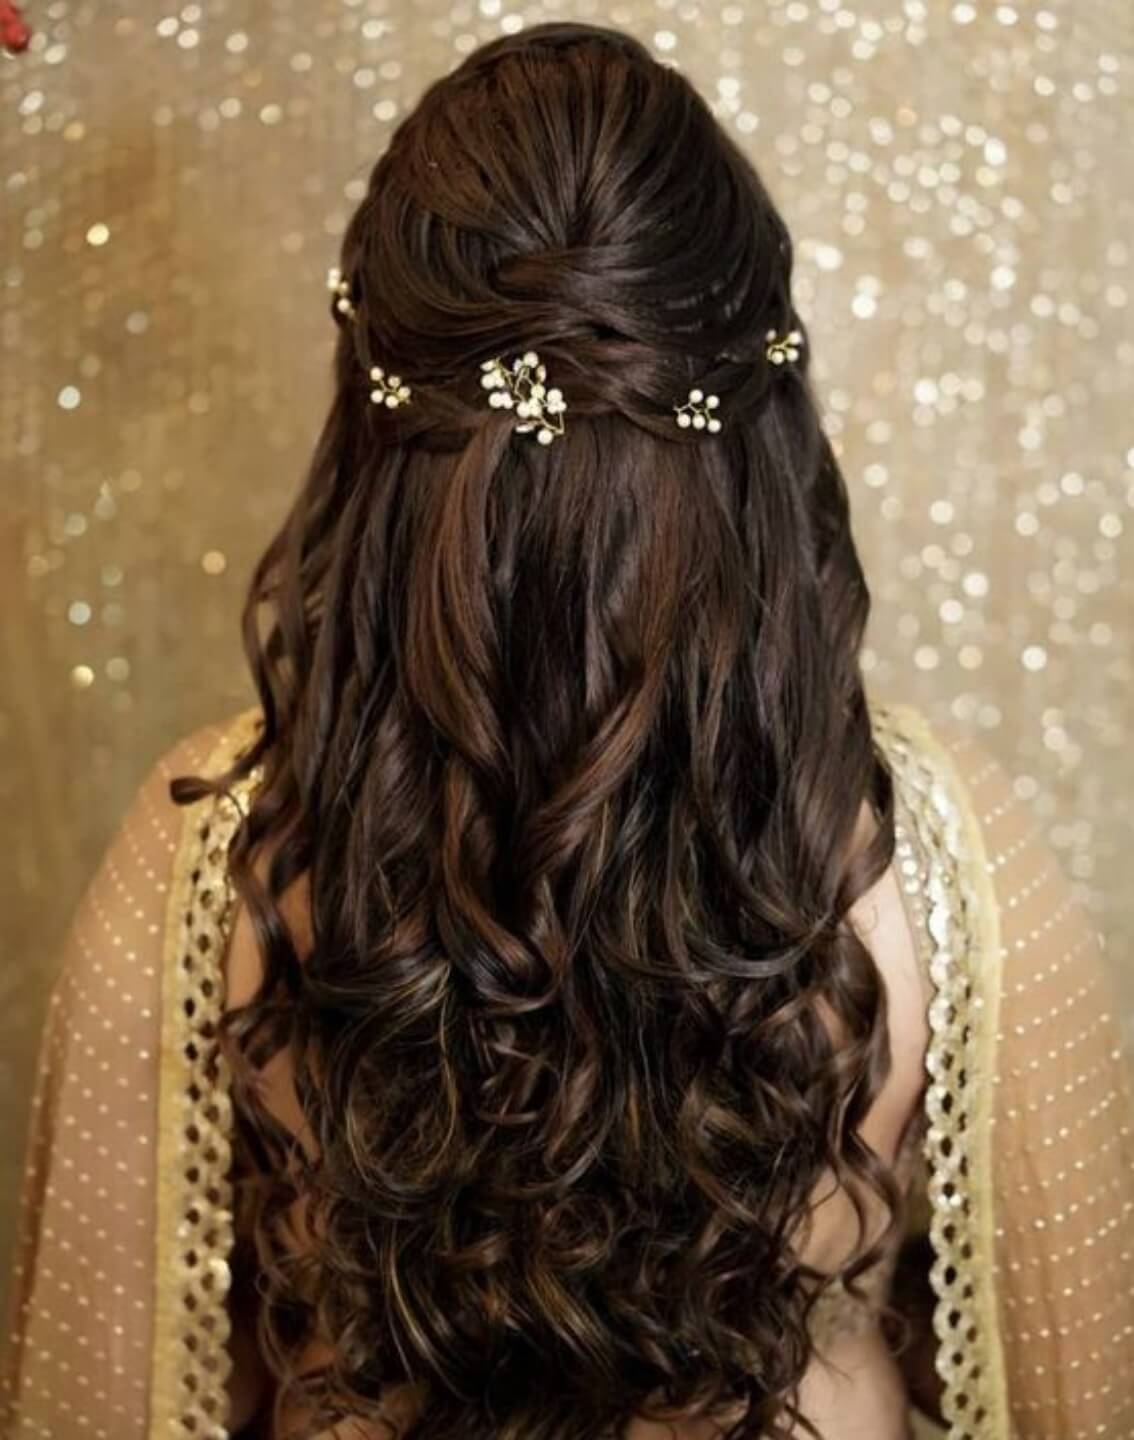 इन खुले बालों की हेयर स्टाइल के साथ दिखें गॉर्जियस और स्टाइलिश – Khule Balo  ki Hairstyle